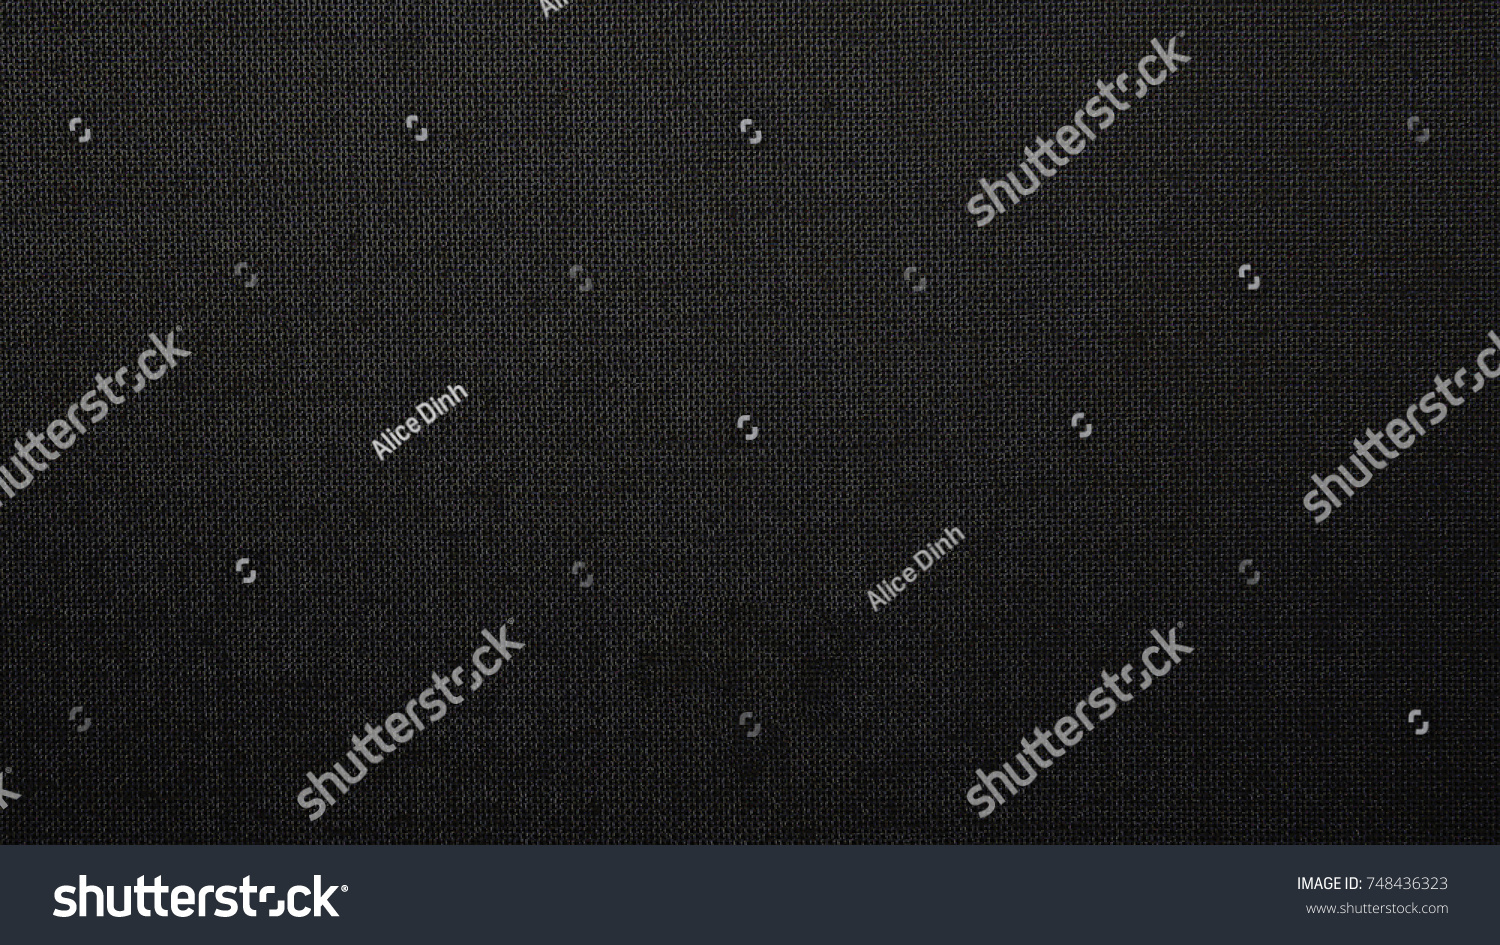 162,994 Dark cotton texture Images, Stock Photos & Vectors | Shutterstock